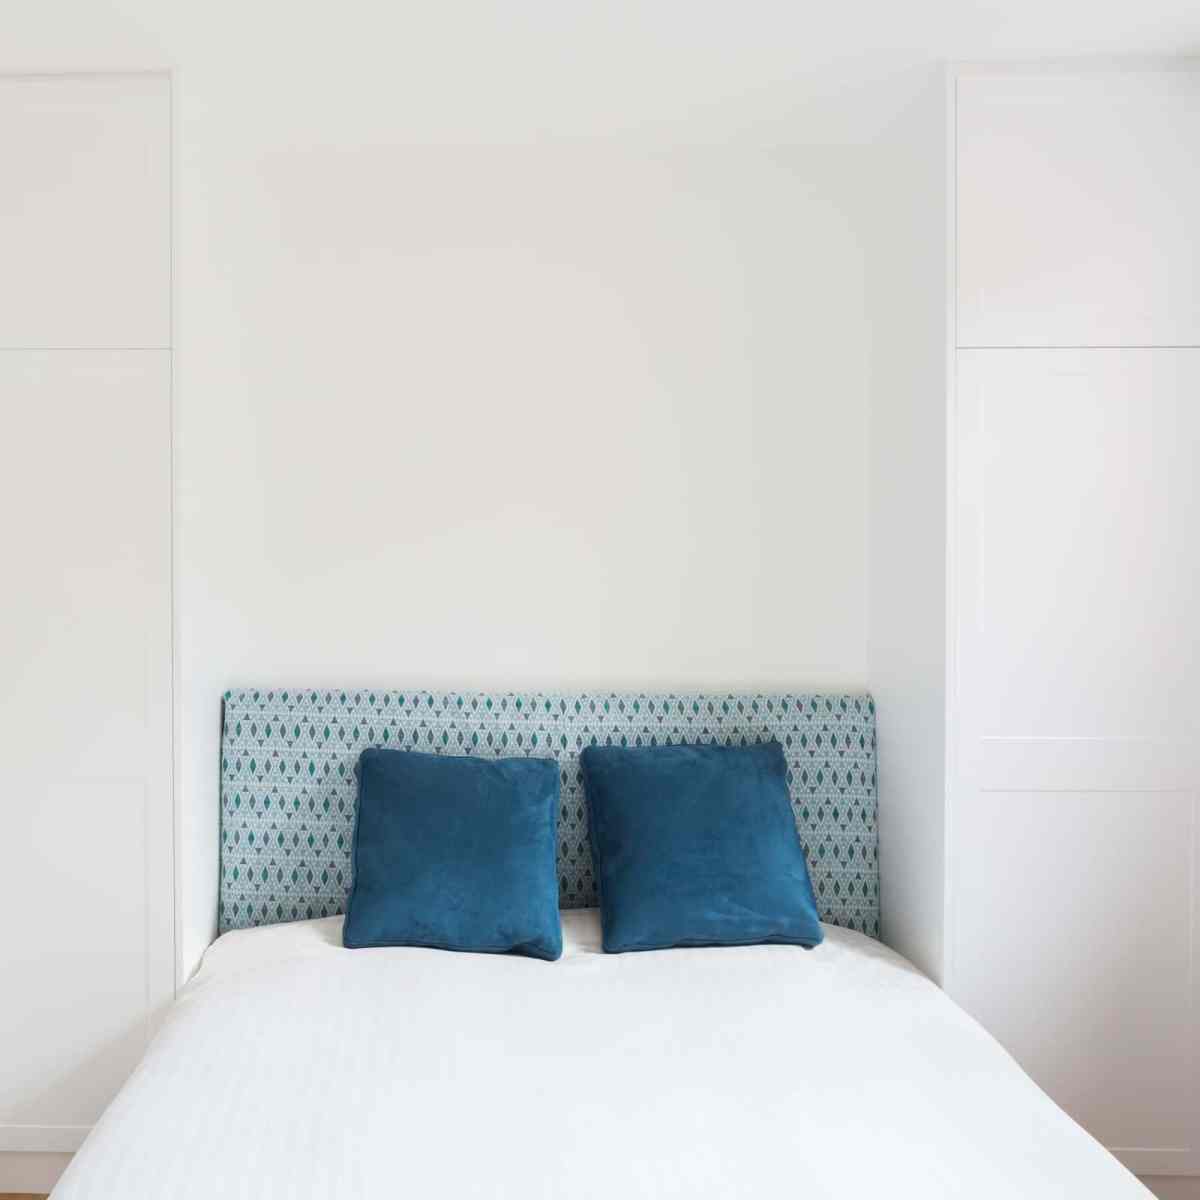 Penderie en laqué blanc mat pour aménager la tête de lit de cette chambre réalisée sur mesure - 2850€ TTC